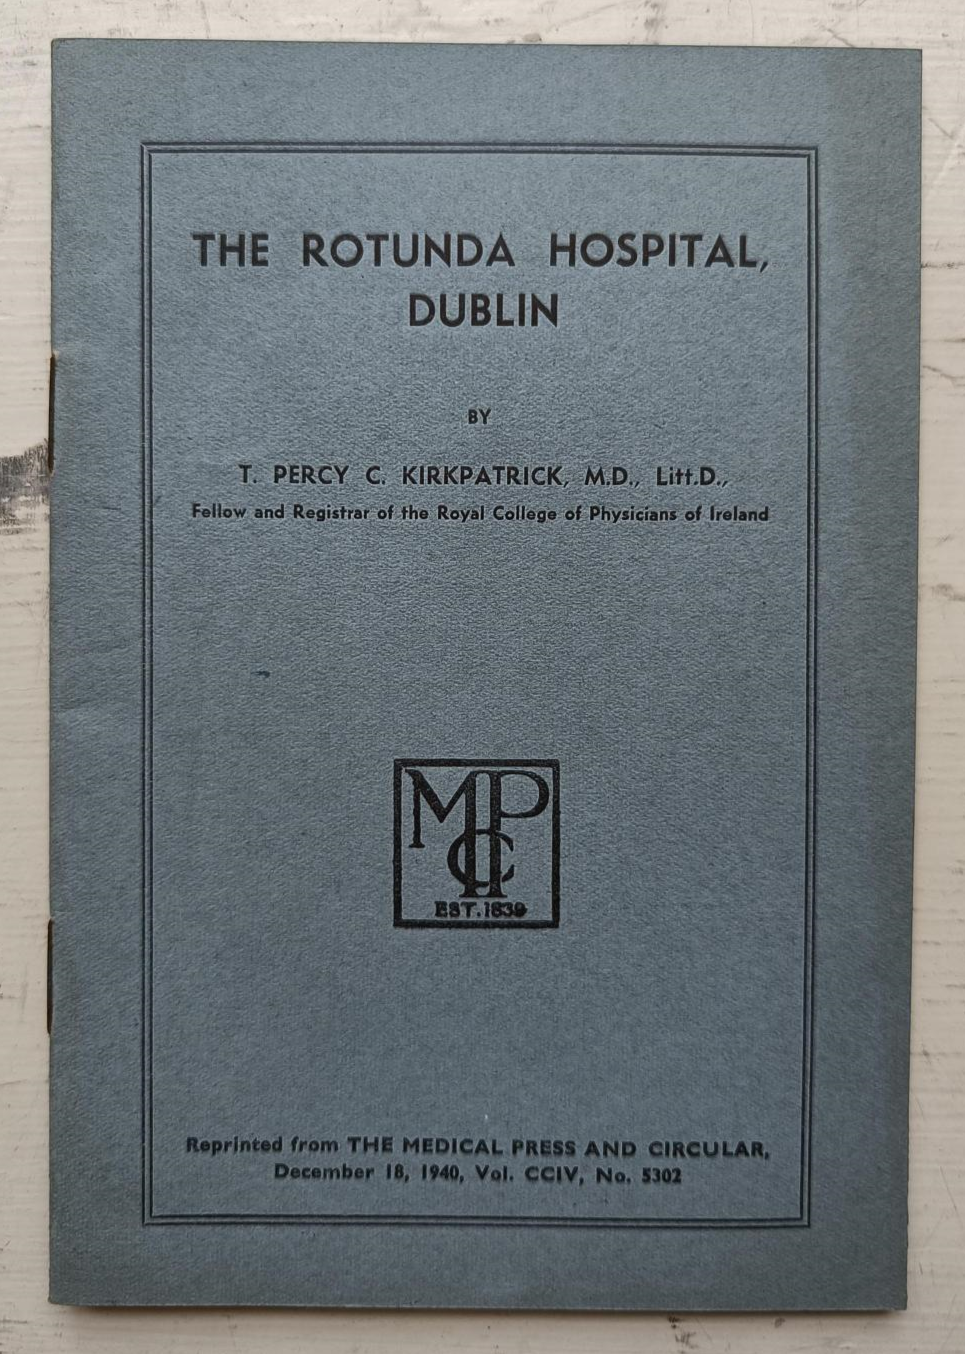 The Rotunda Hospital Dublin - T. Percy C. Kirkpatrick